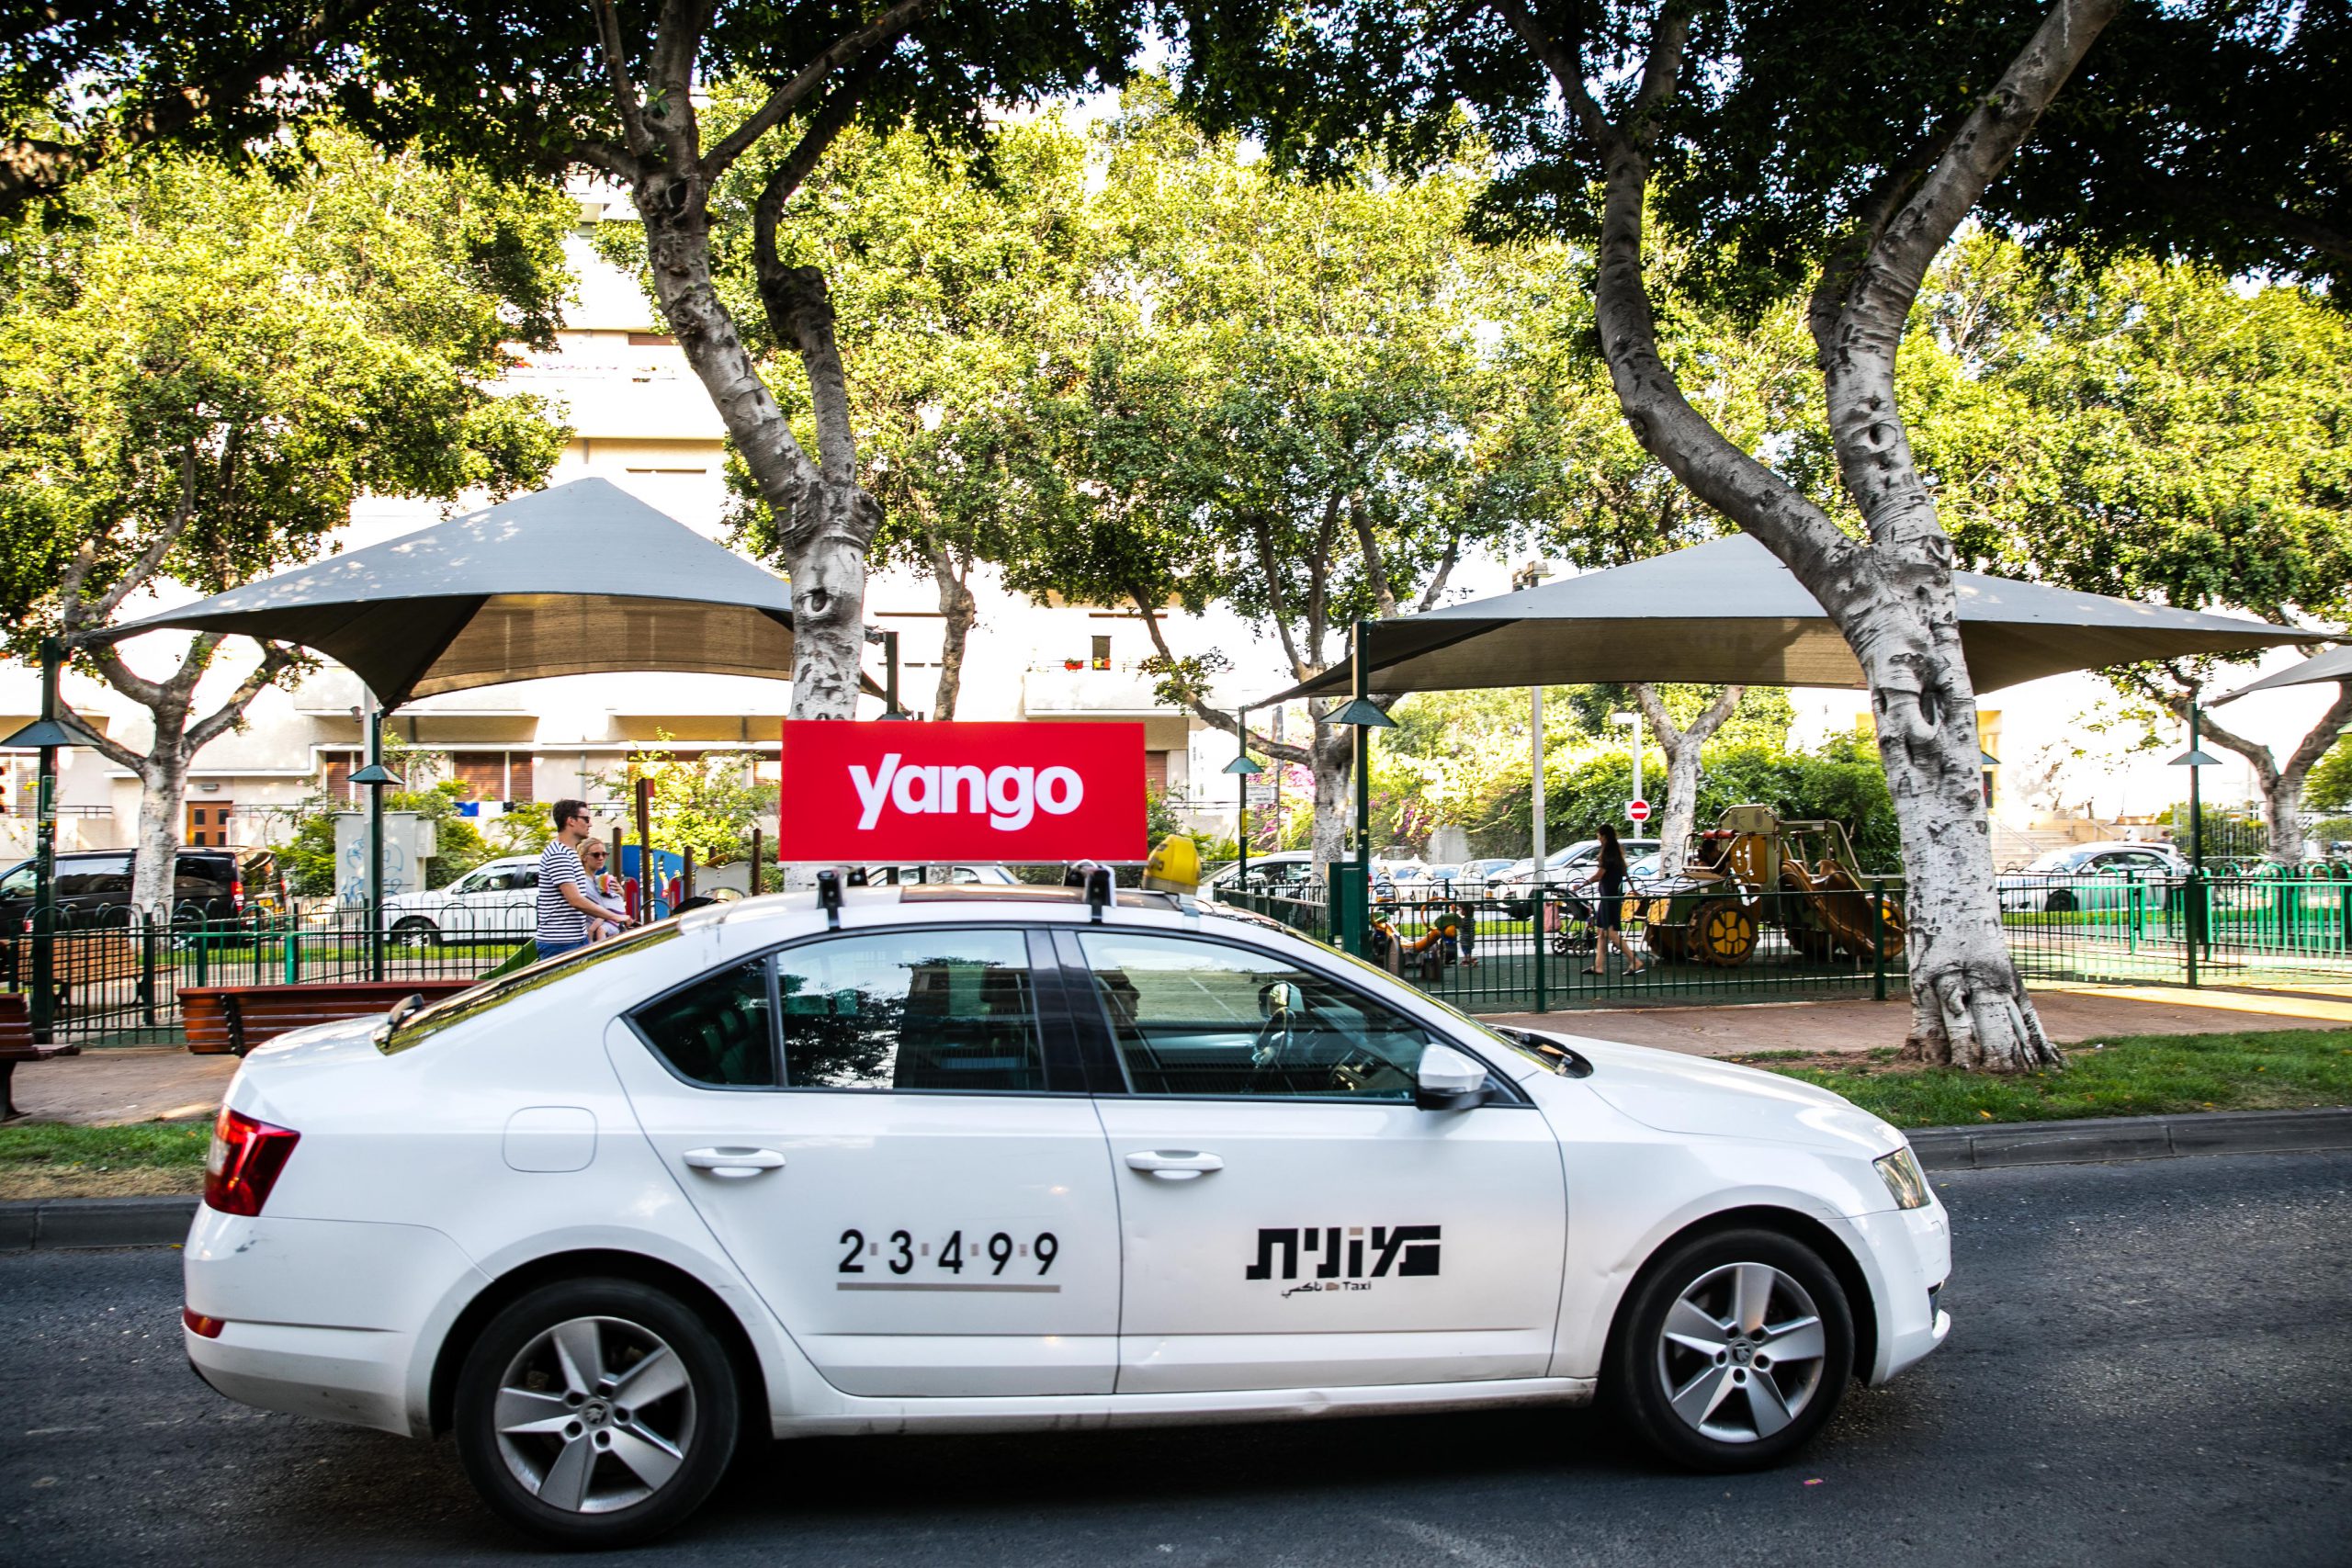 אפליקציית הזמנת המוניות Yango מעמיקה את פעילותה באזור חיפה